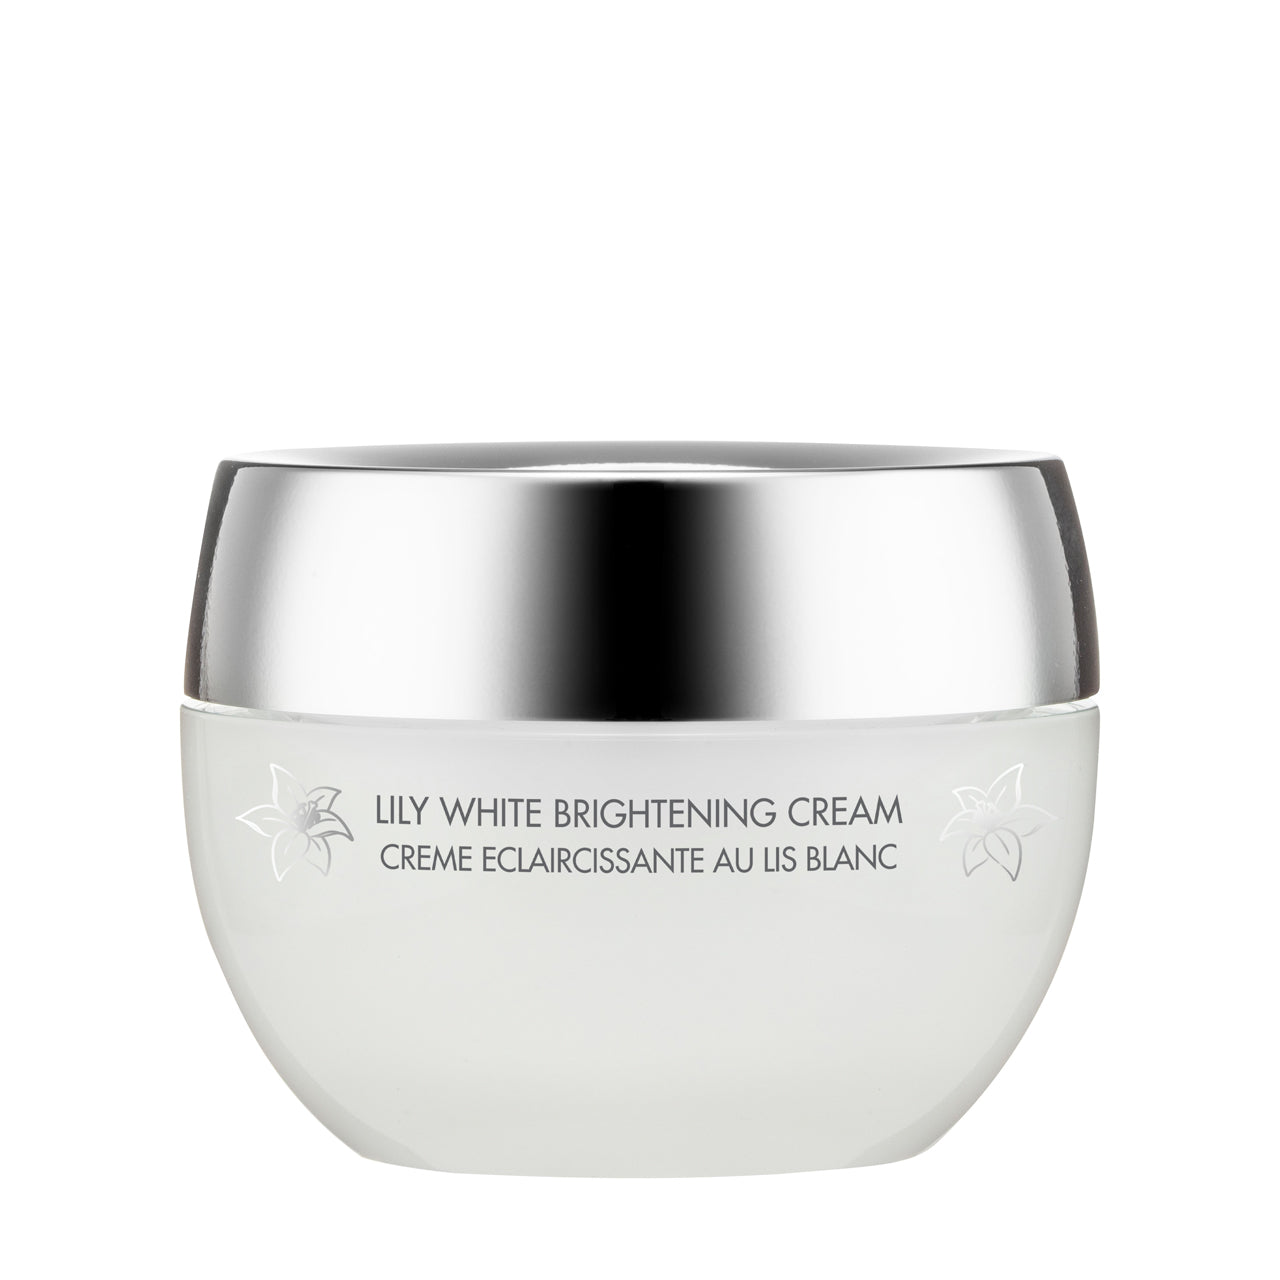 Methode Swiss Lily White Brightening Cream 50ML | Sasa Global eShop